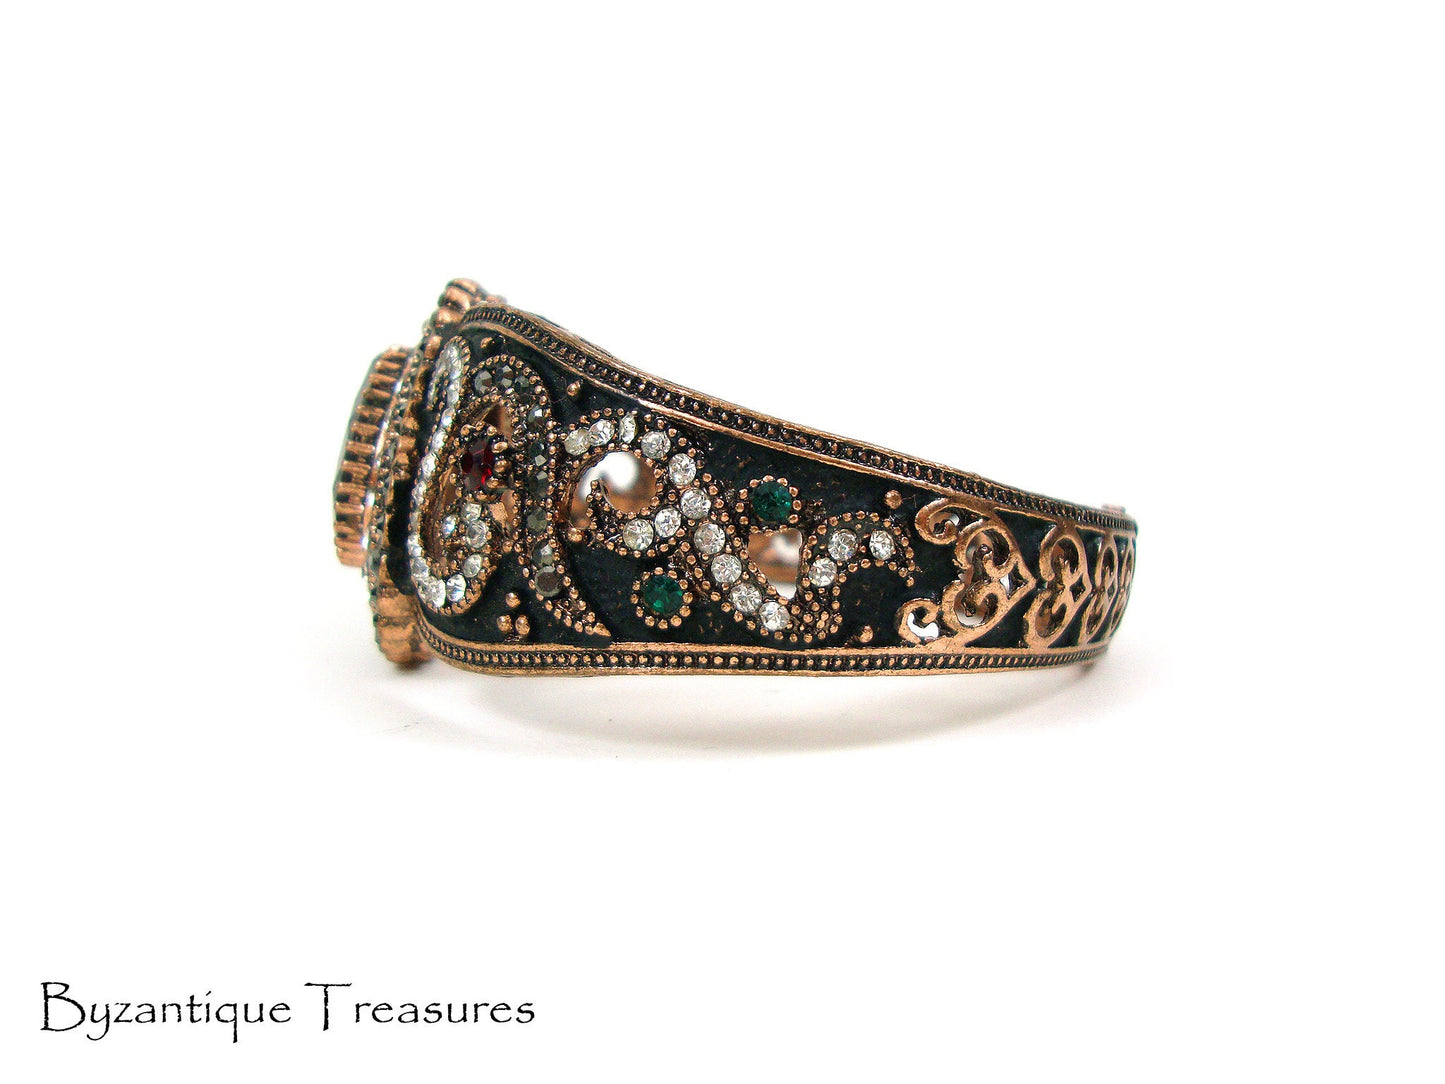 Byzantinischer Armreif Kristallsteine, byzantinisches oxidiertes Armband, türkisches Armband, türkischer Schmuck, traditionelles, antikes Armband